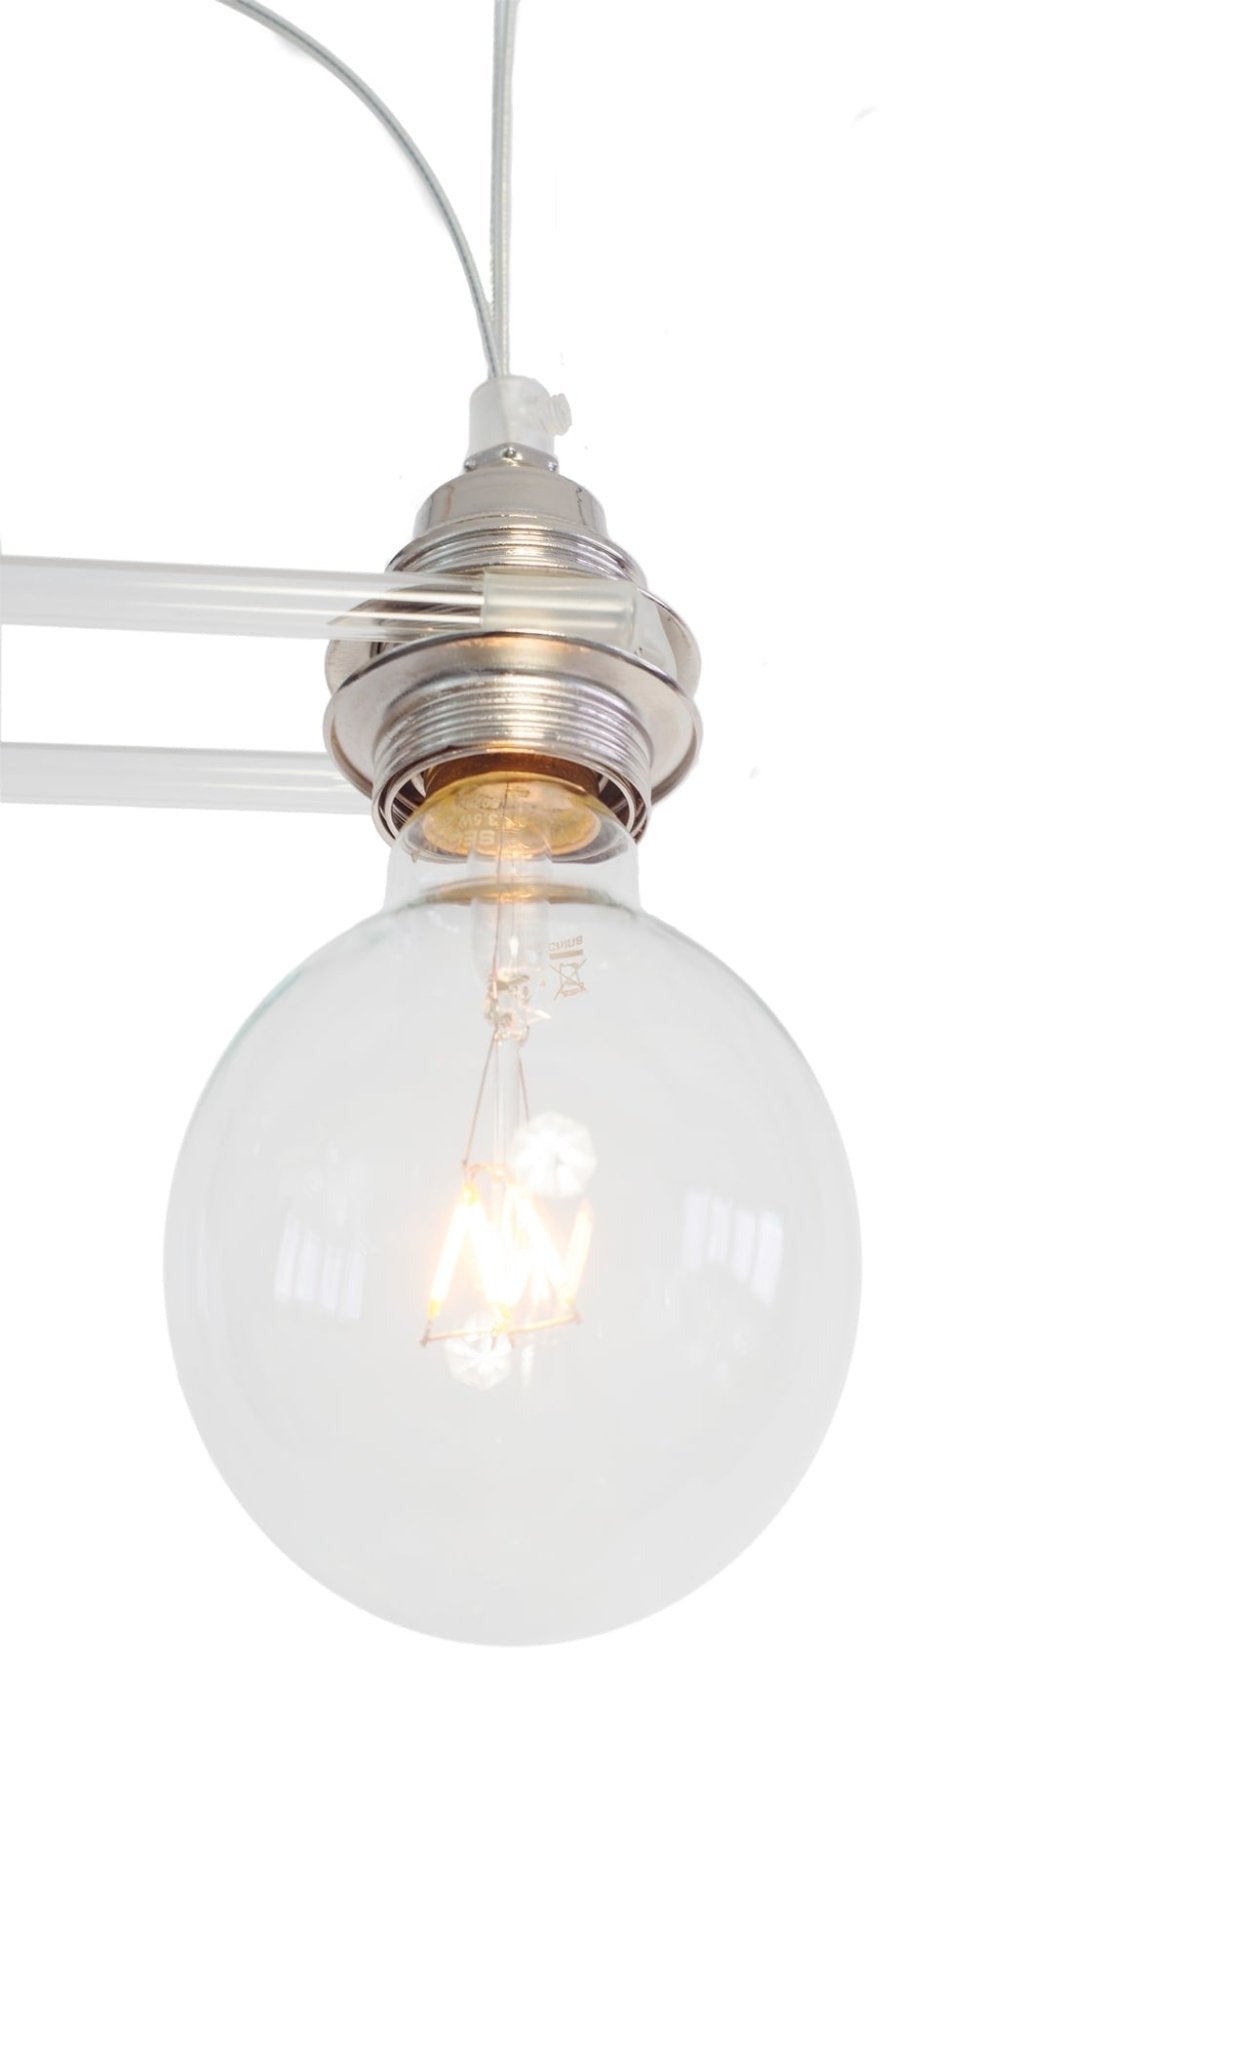 Sandeluce - Hanglamp 1879 7L LED